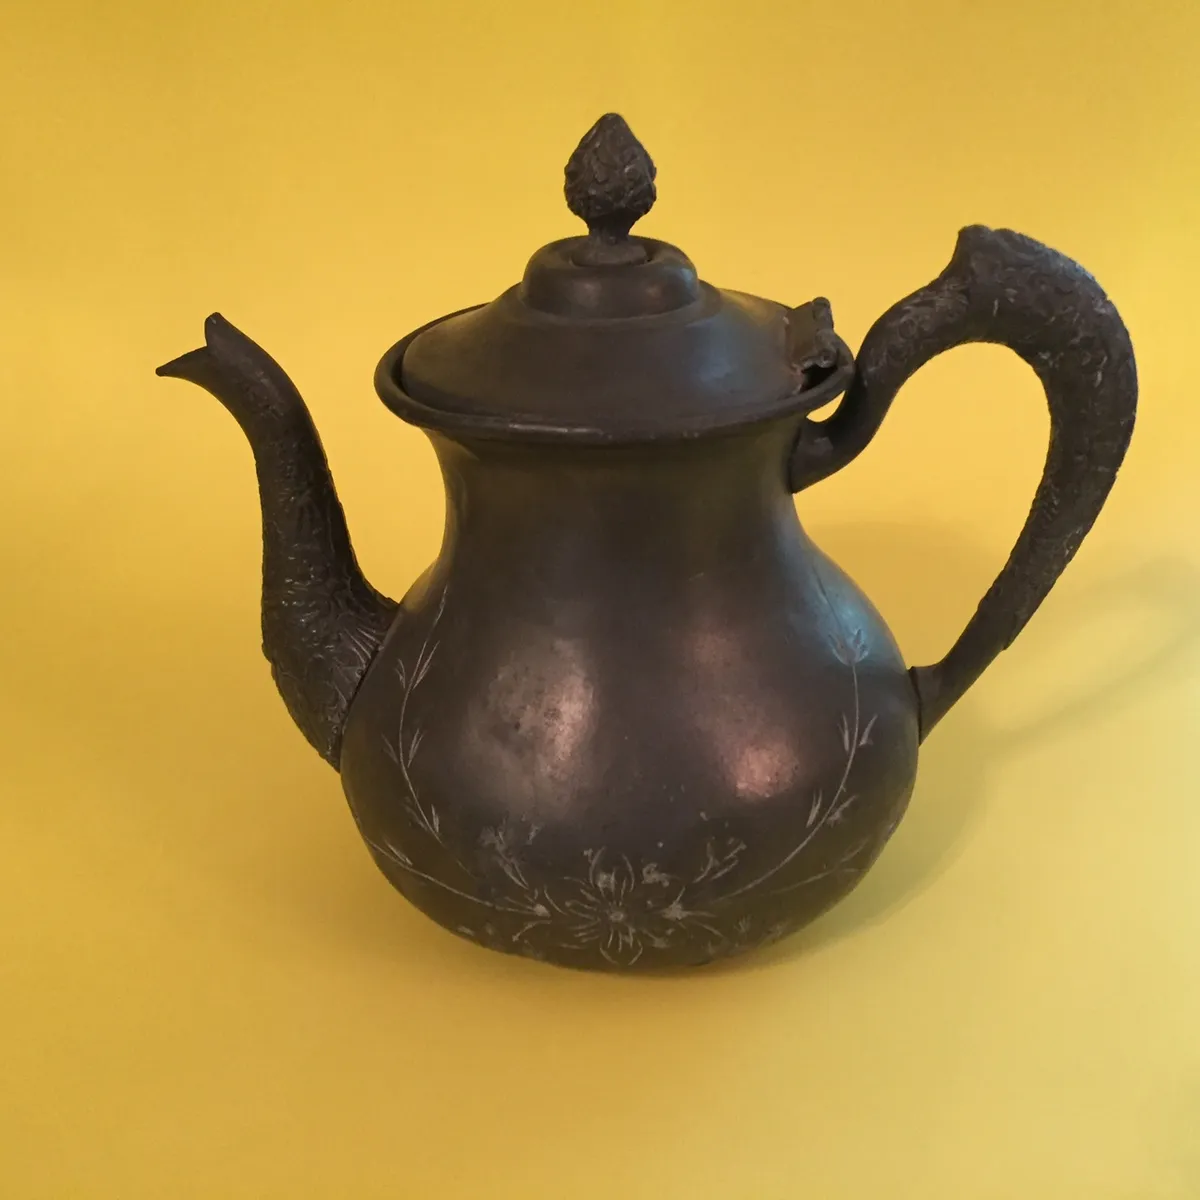 Antique Tea Pot, Royal Mfg. Co. Triple Plate, Early 1900